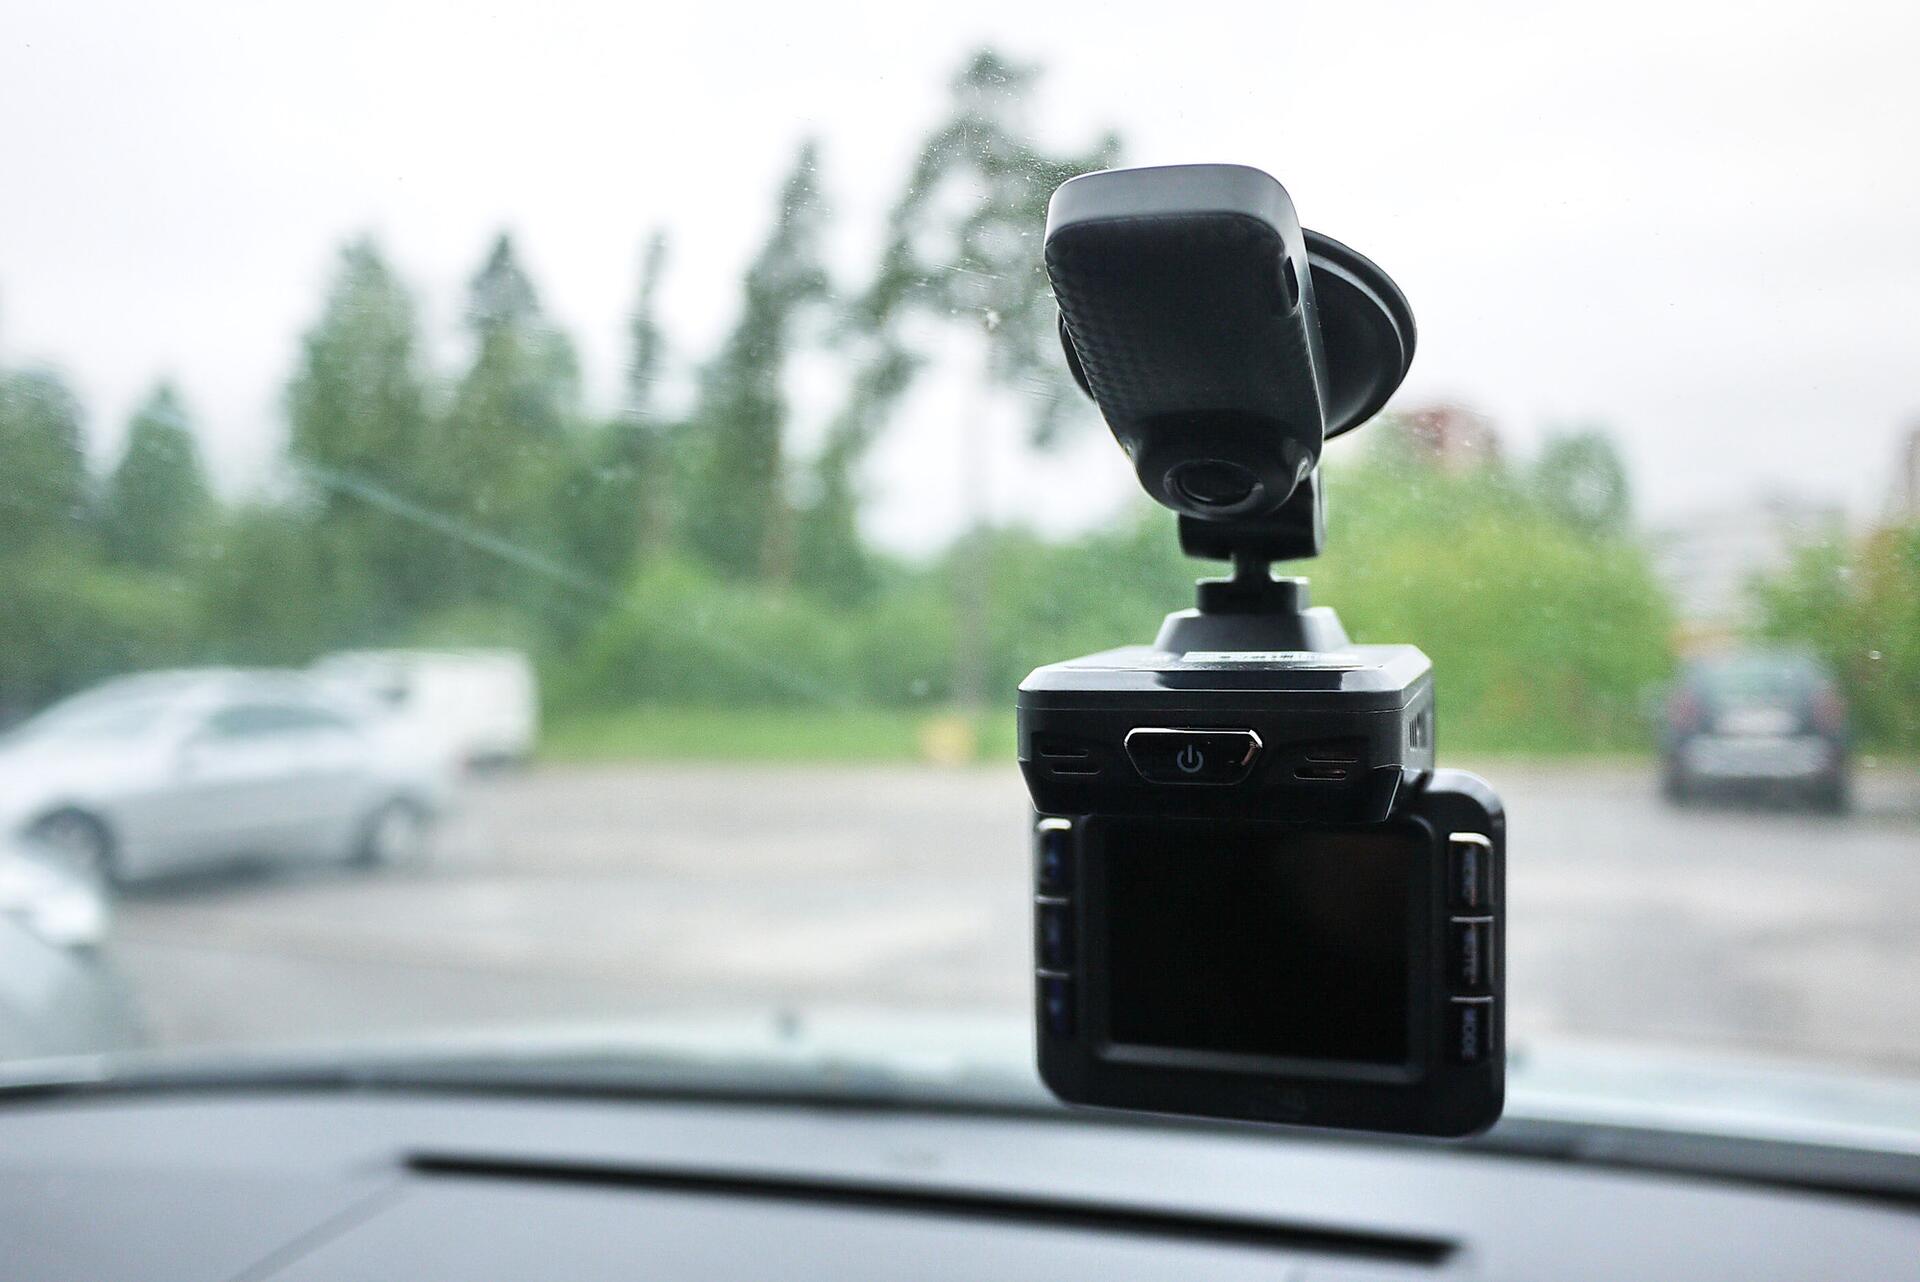 Duální kamera do auta - co to je a jaké má výhody